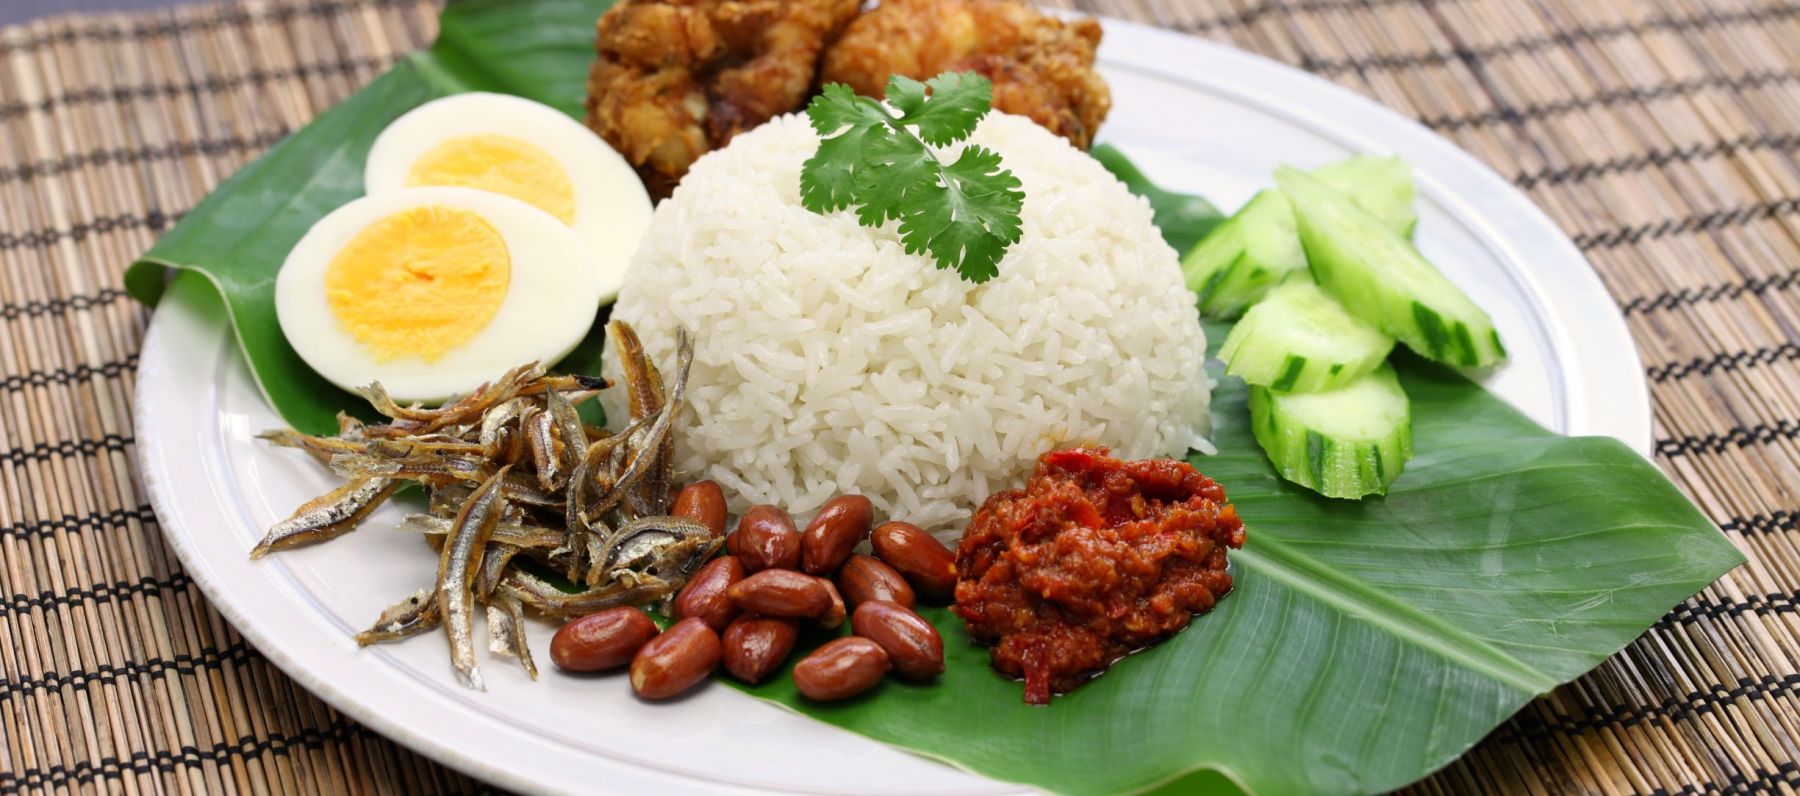 Nasi Lemak is a popular Singaporean dish